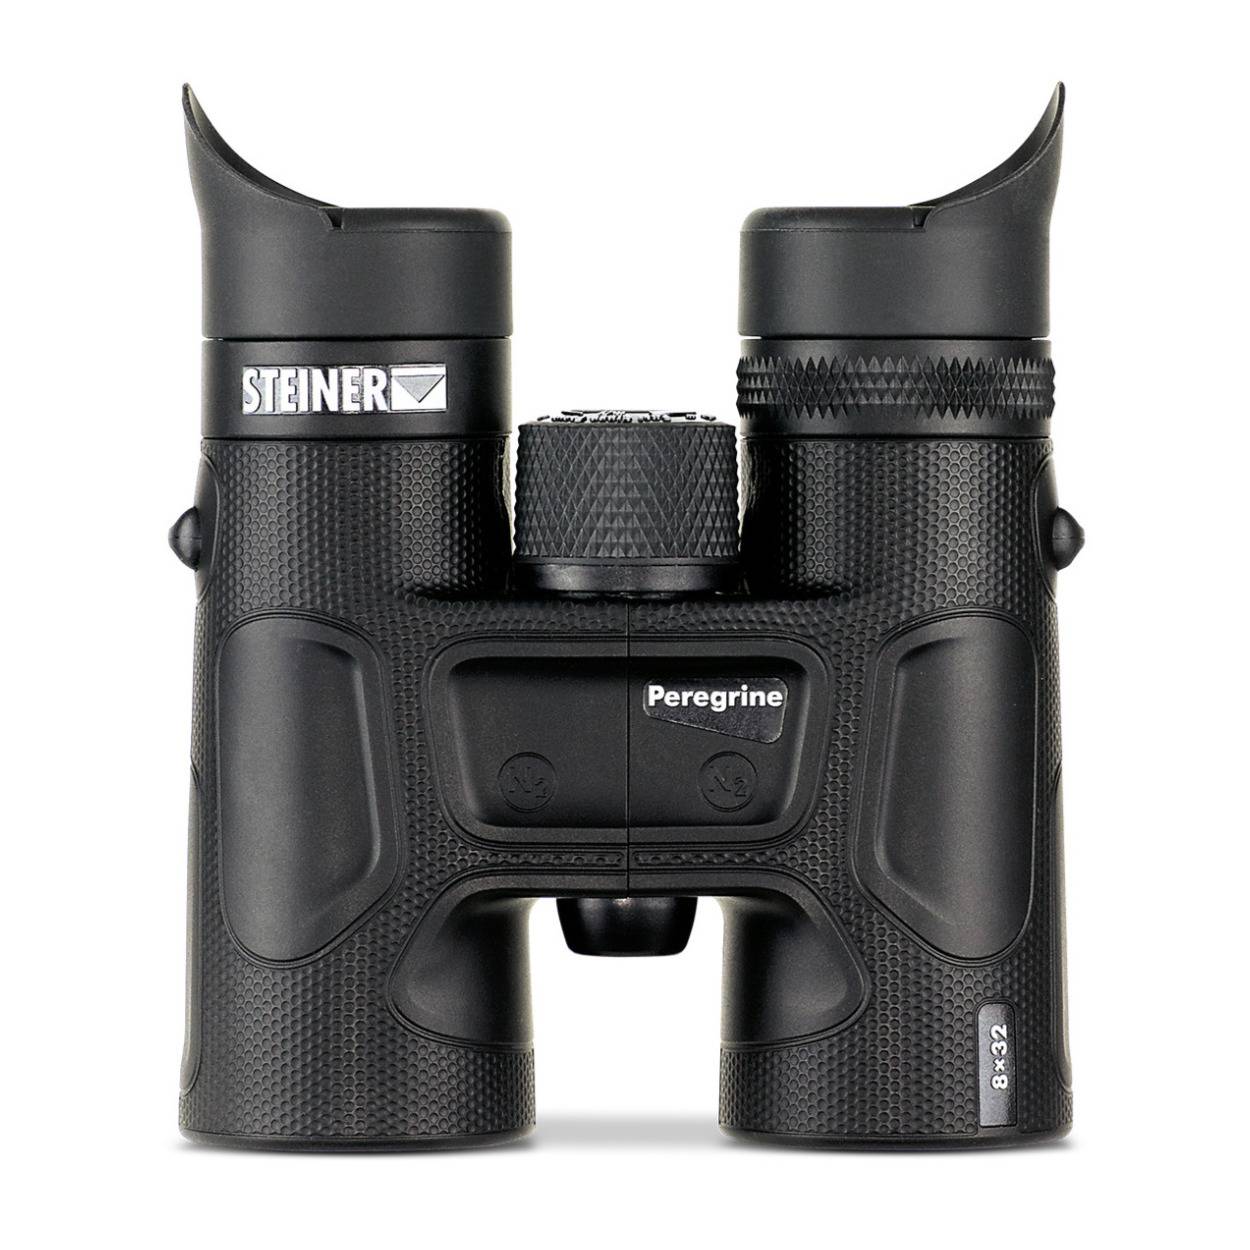 Steiner Peregrine 10x32 Binoculars